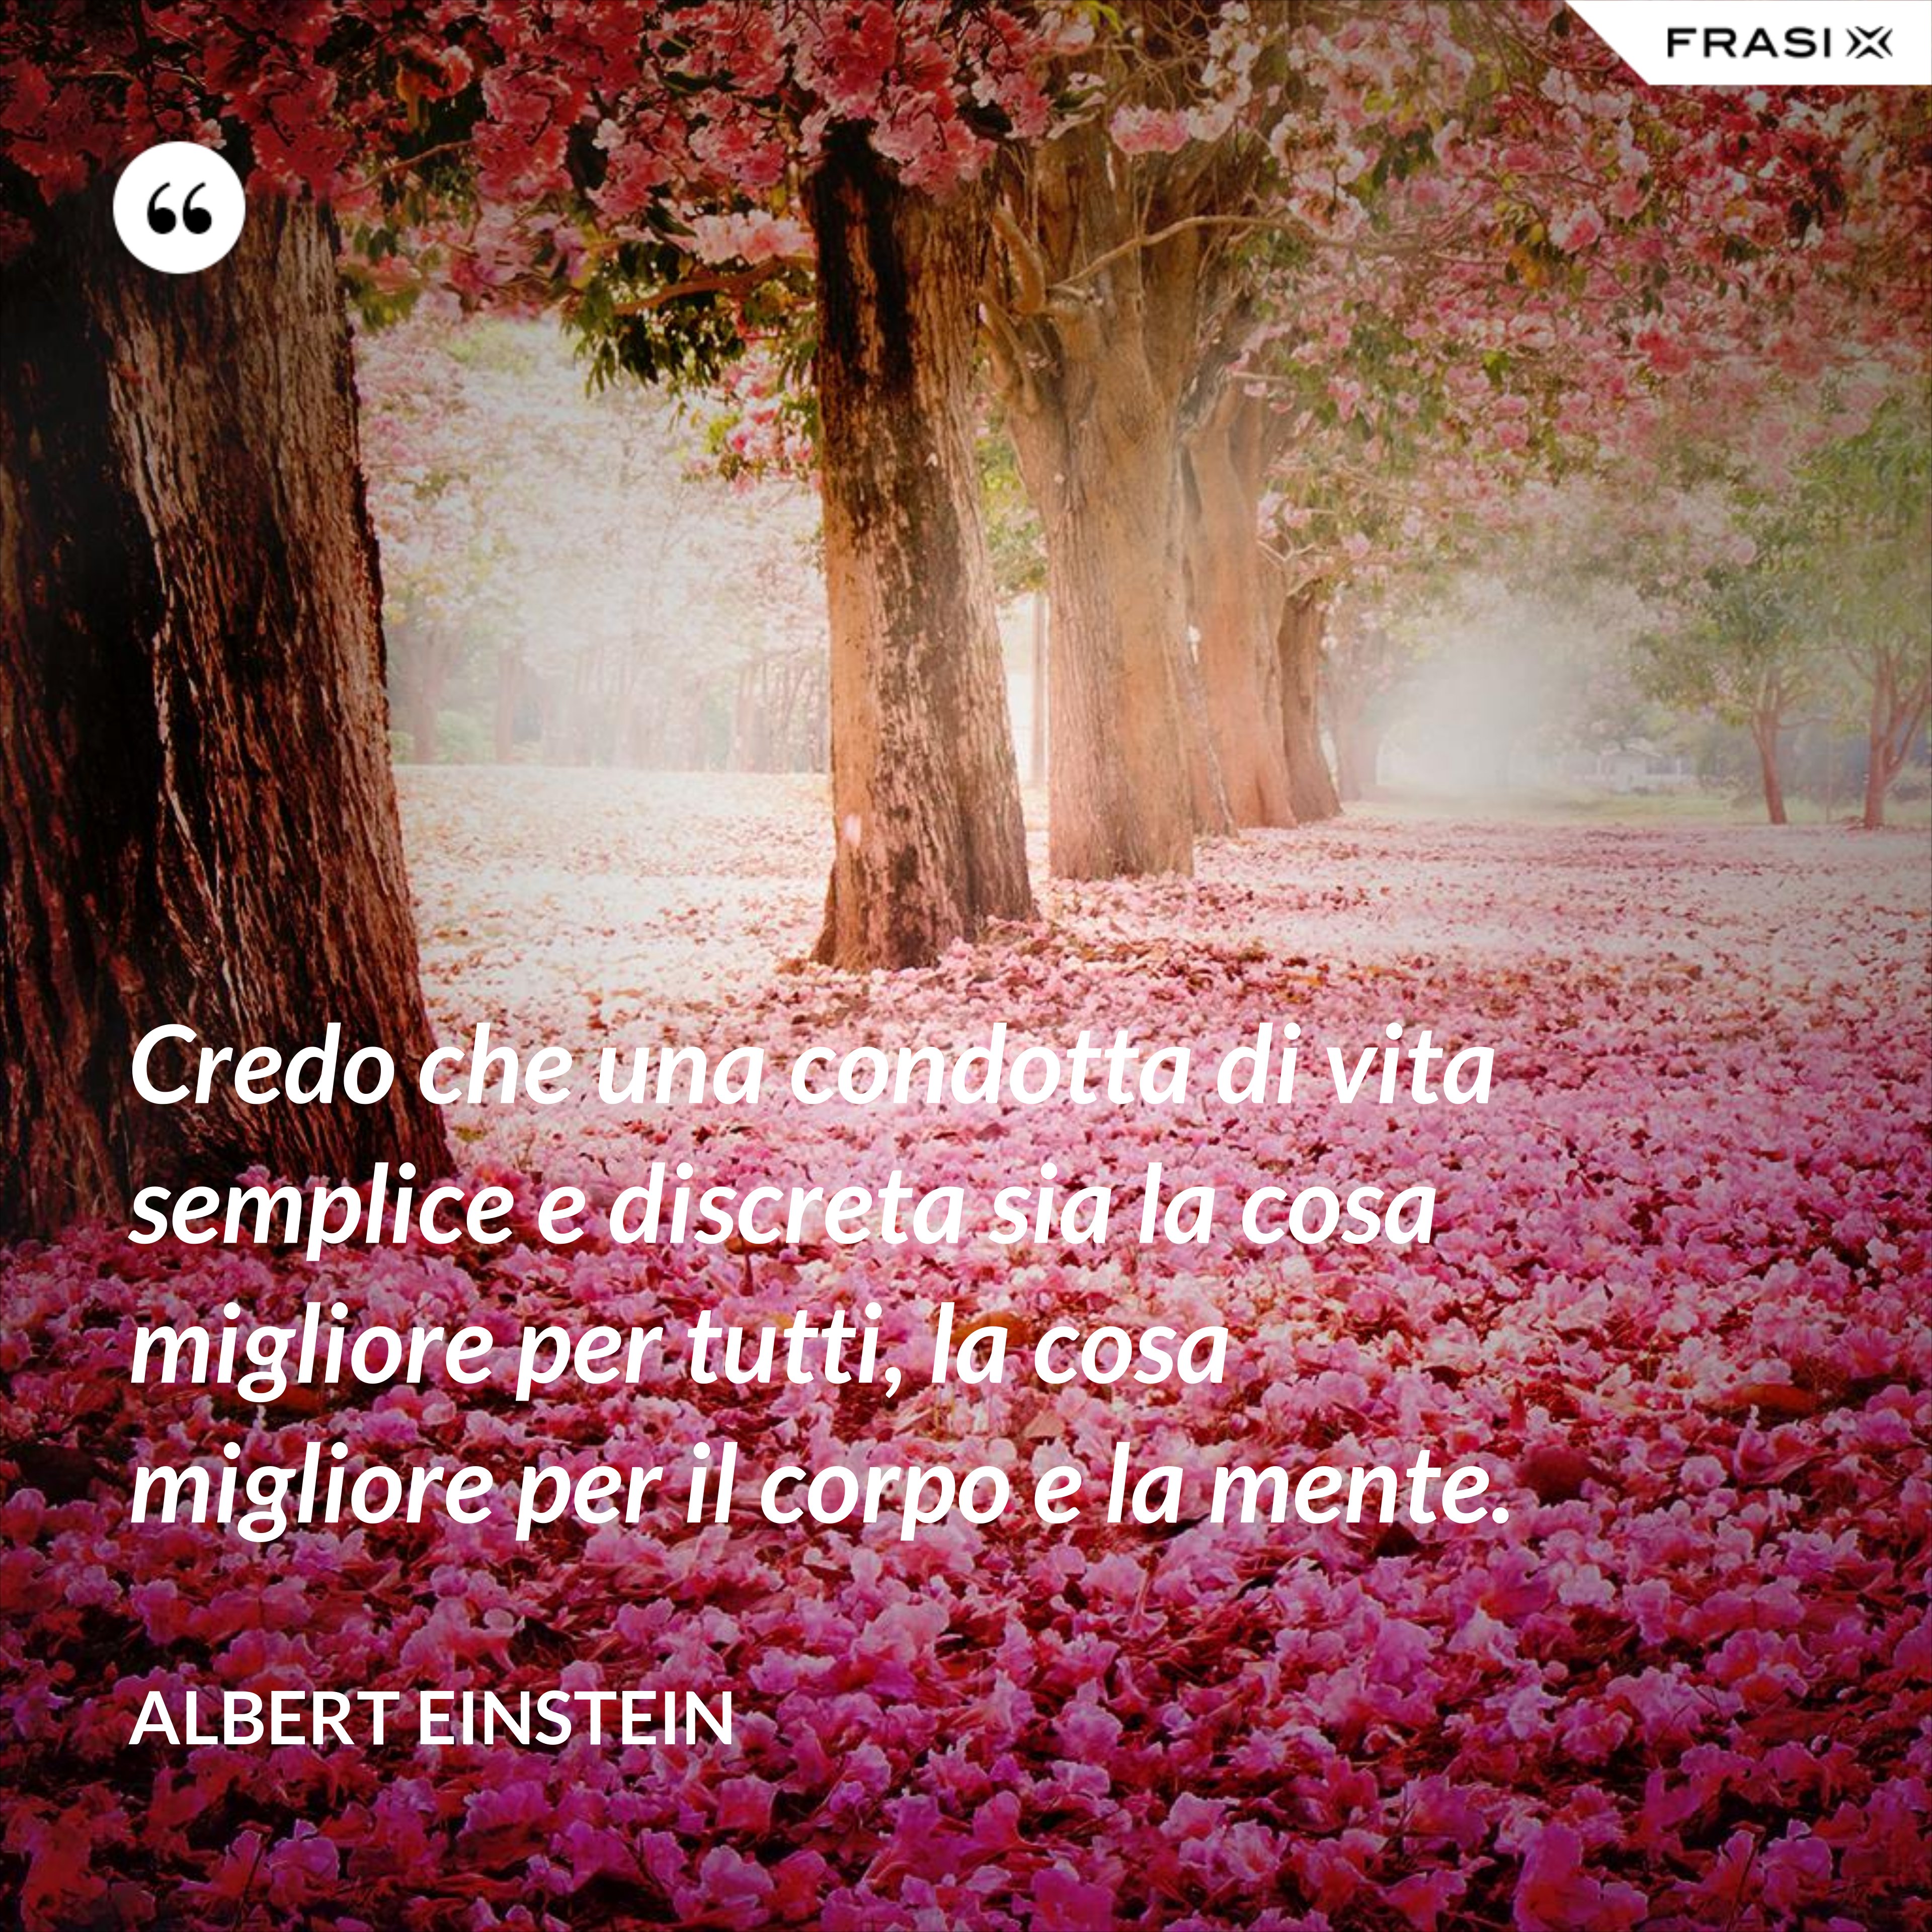 Credo che una condotta di vita semplice e discreta sia la cosa migliore per tutti, la cosa migliore per il corpo e la mente. - Albert Einstein